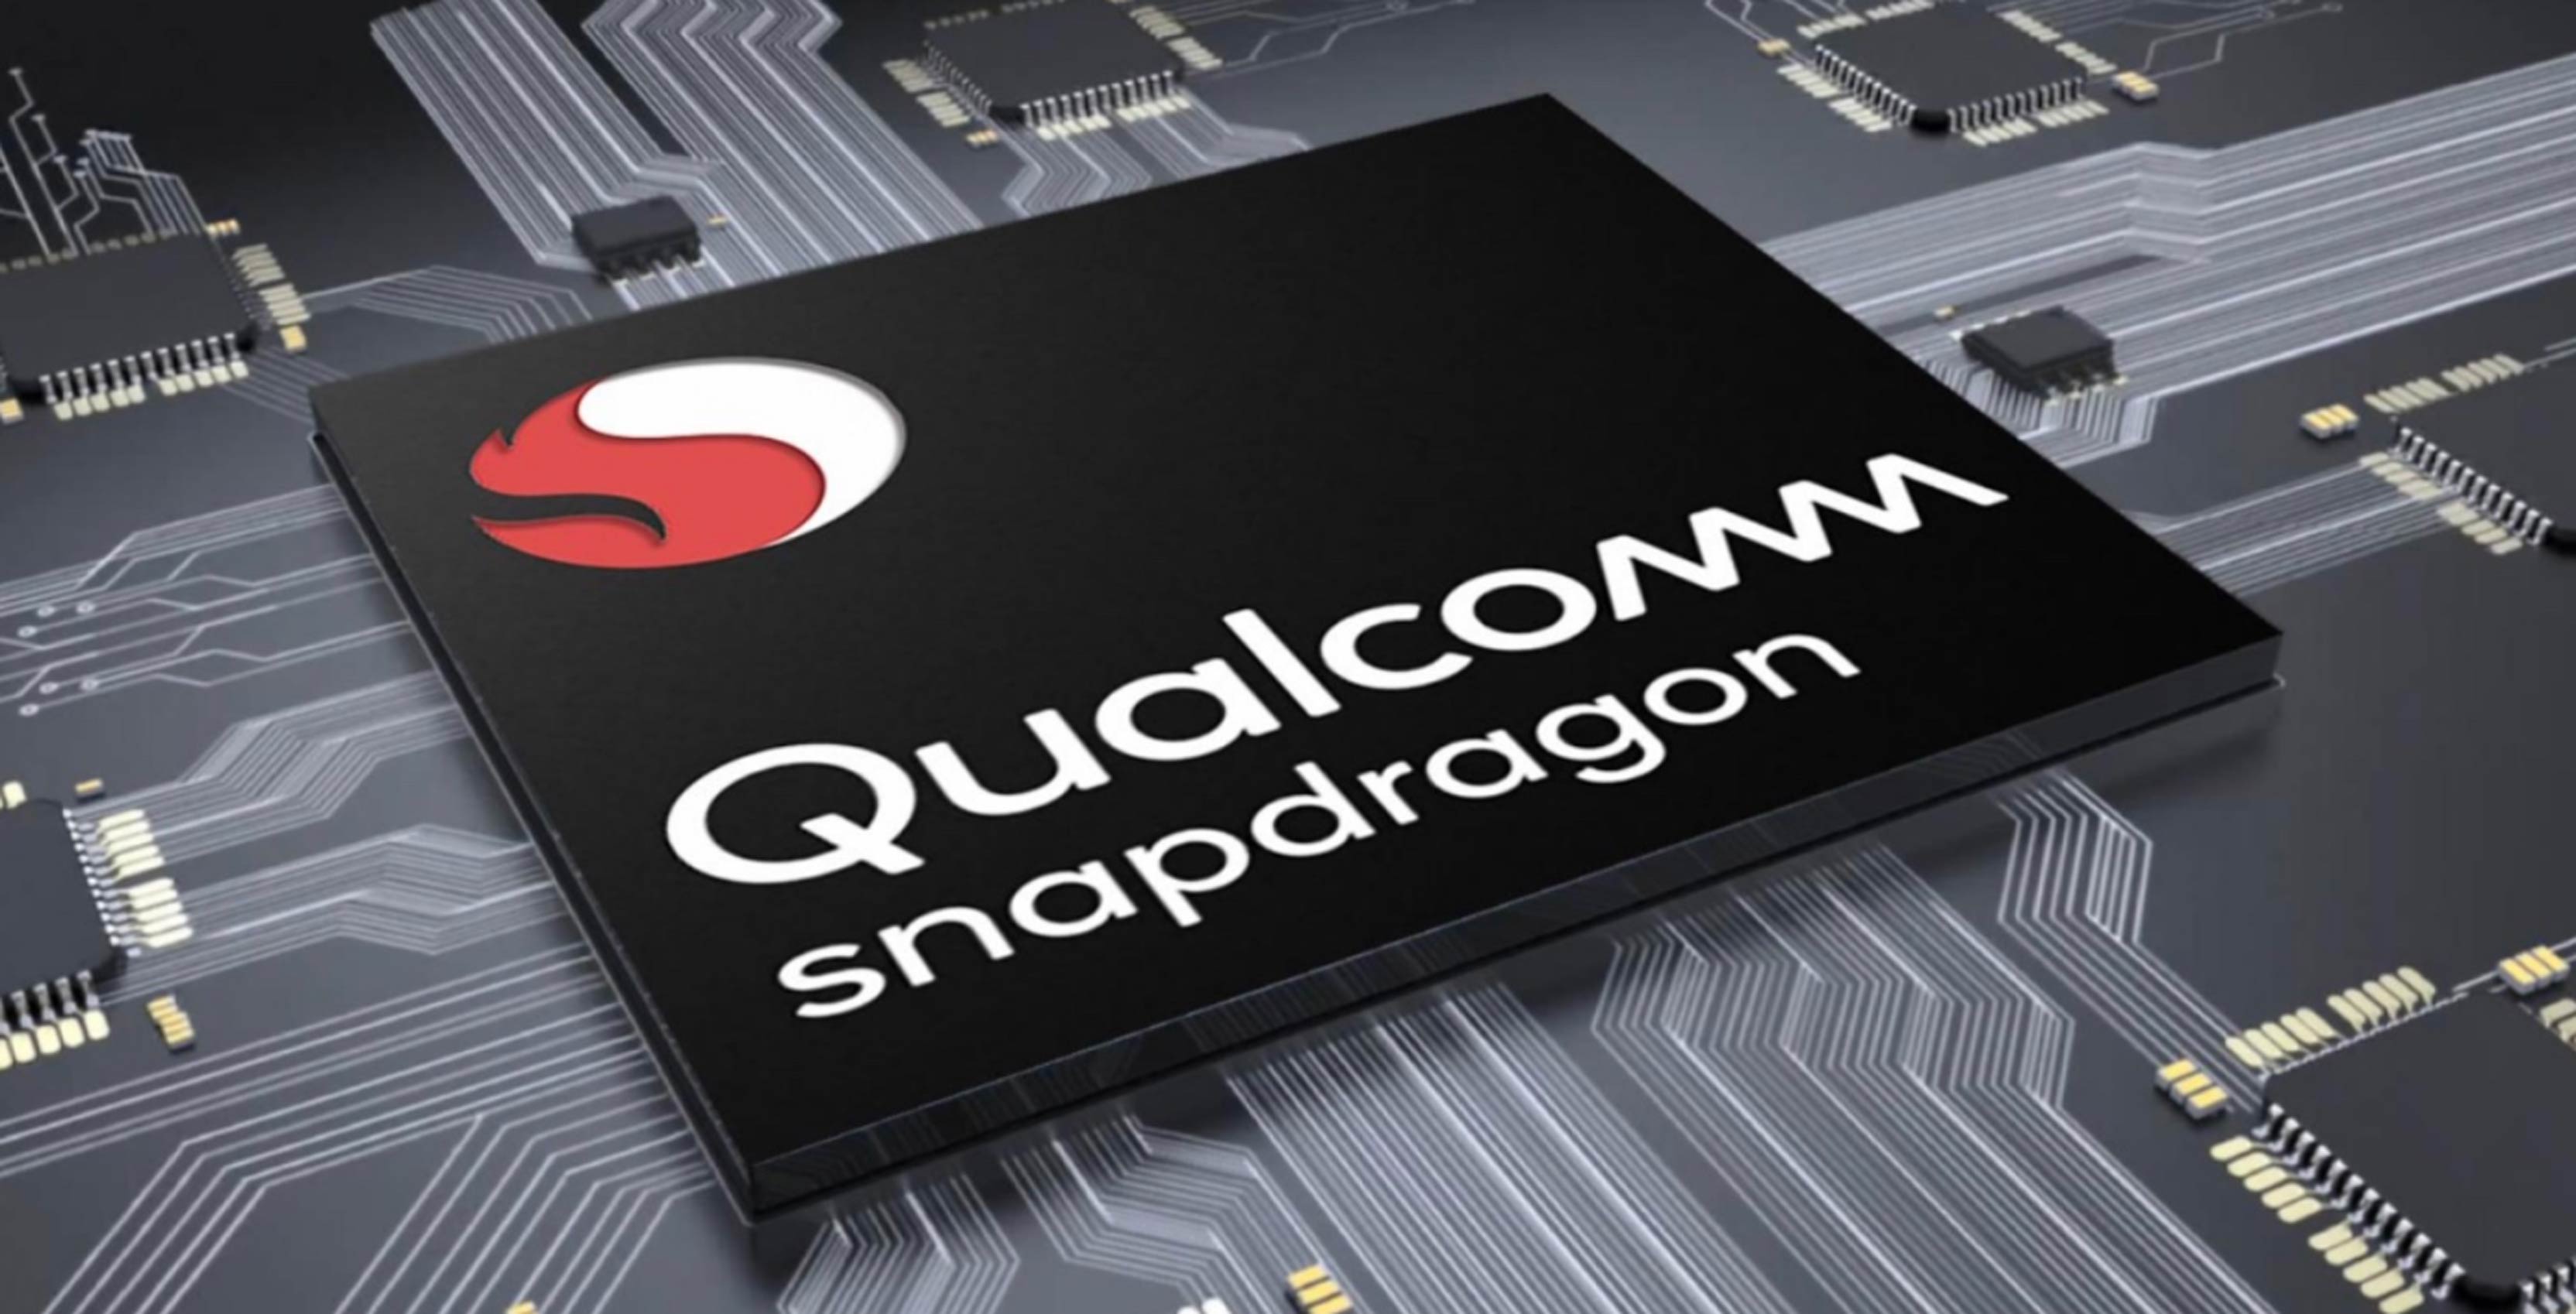 Qualcomm Snapdragon 720G, 662 и 460 SoC, предназначенные для быстроразвивающихся рынков смартфонов, запущенные с региональными спецификациями и функциями